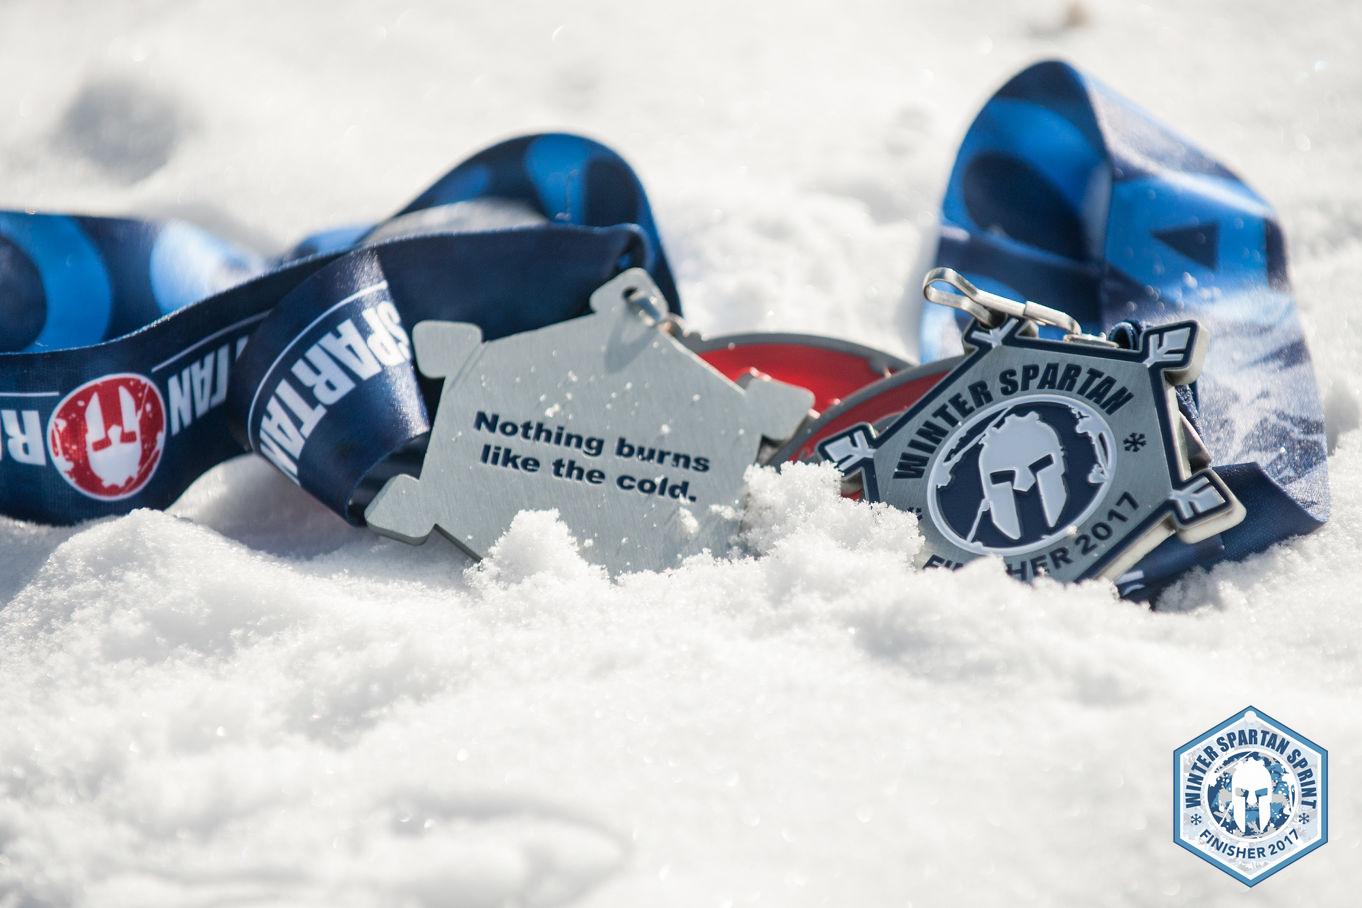 Greek Peak Winter Sprint Medals